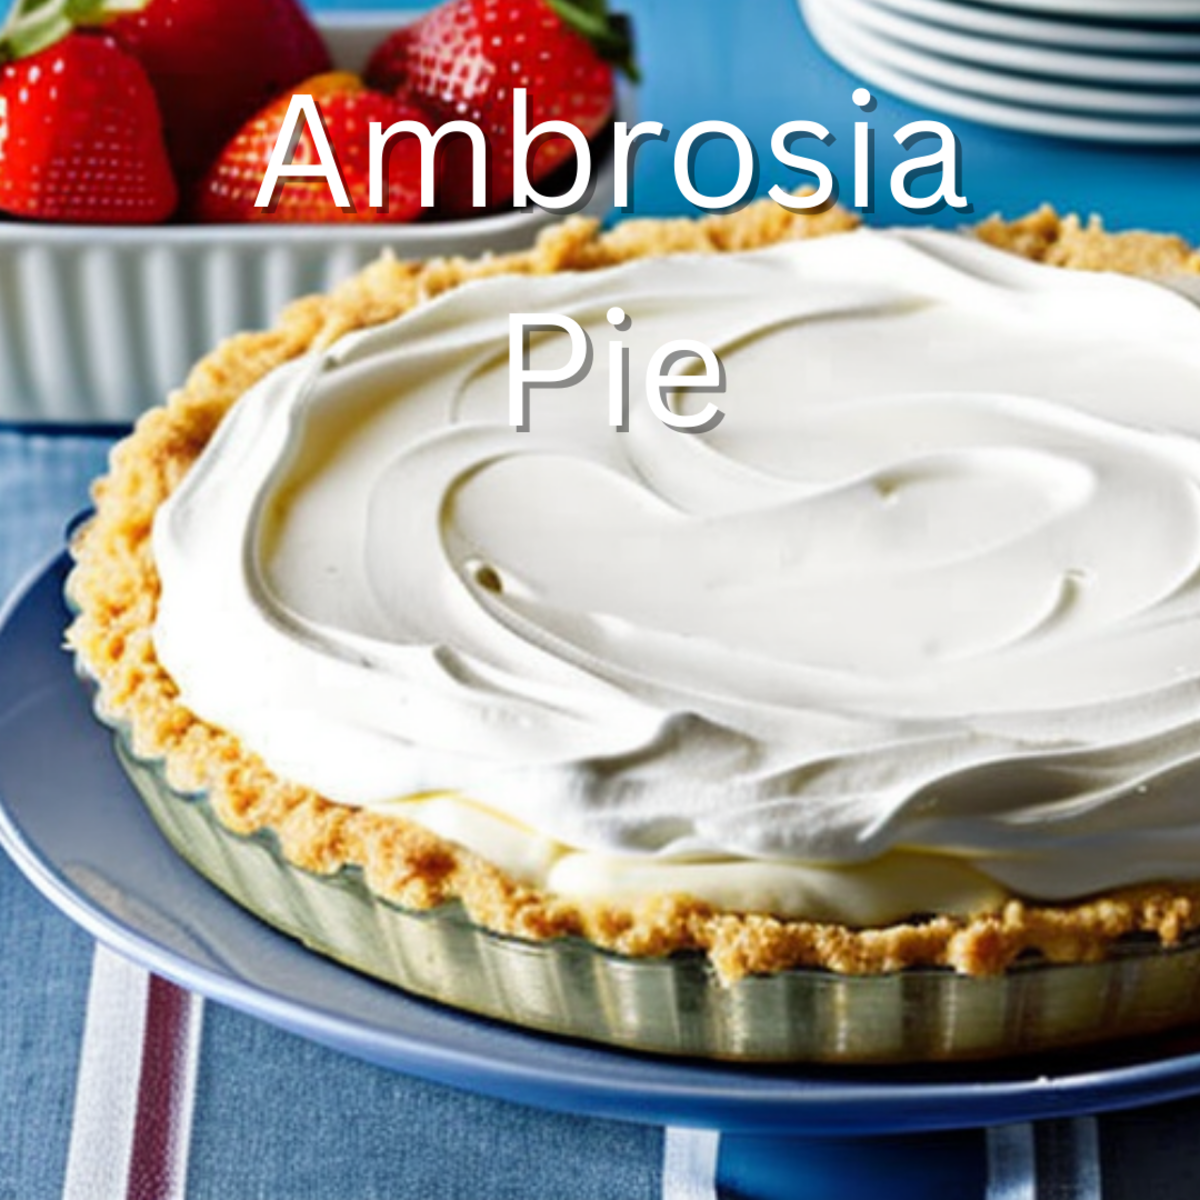 Ambrosia Pie